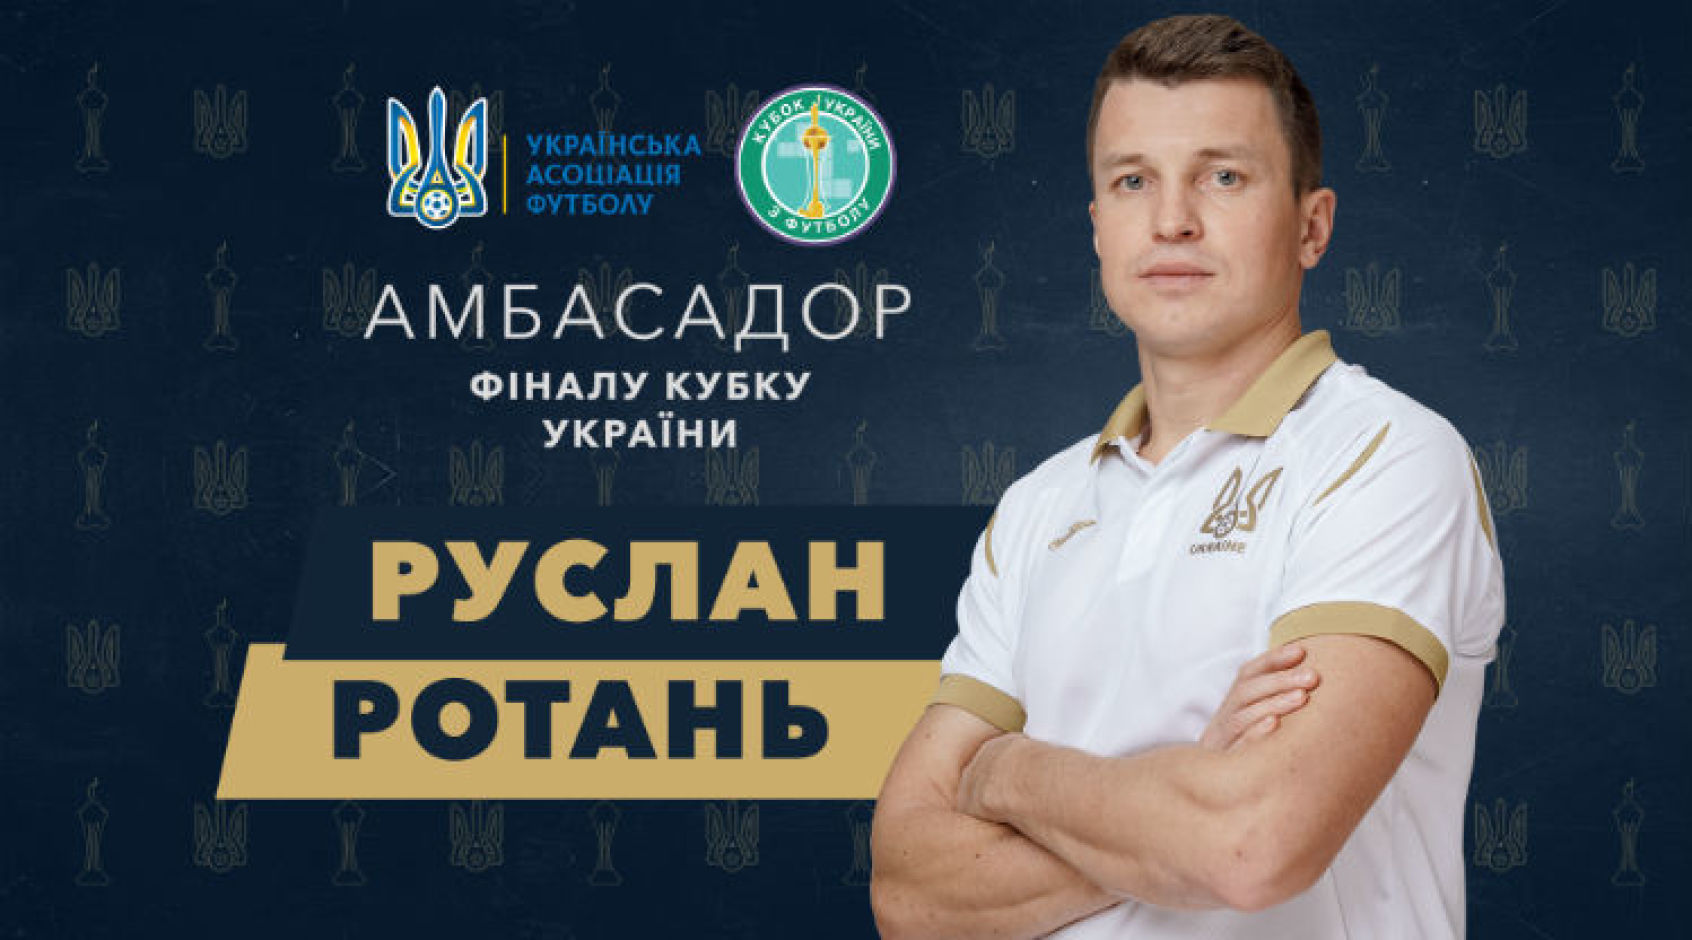 Руслан Ротань - амбасадор фіналу Кубку України